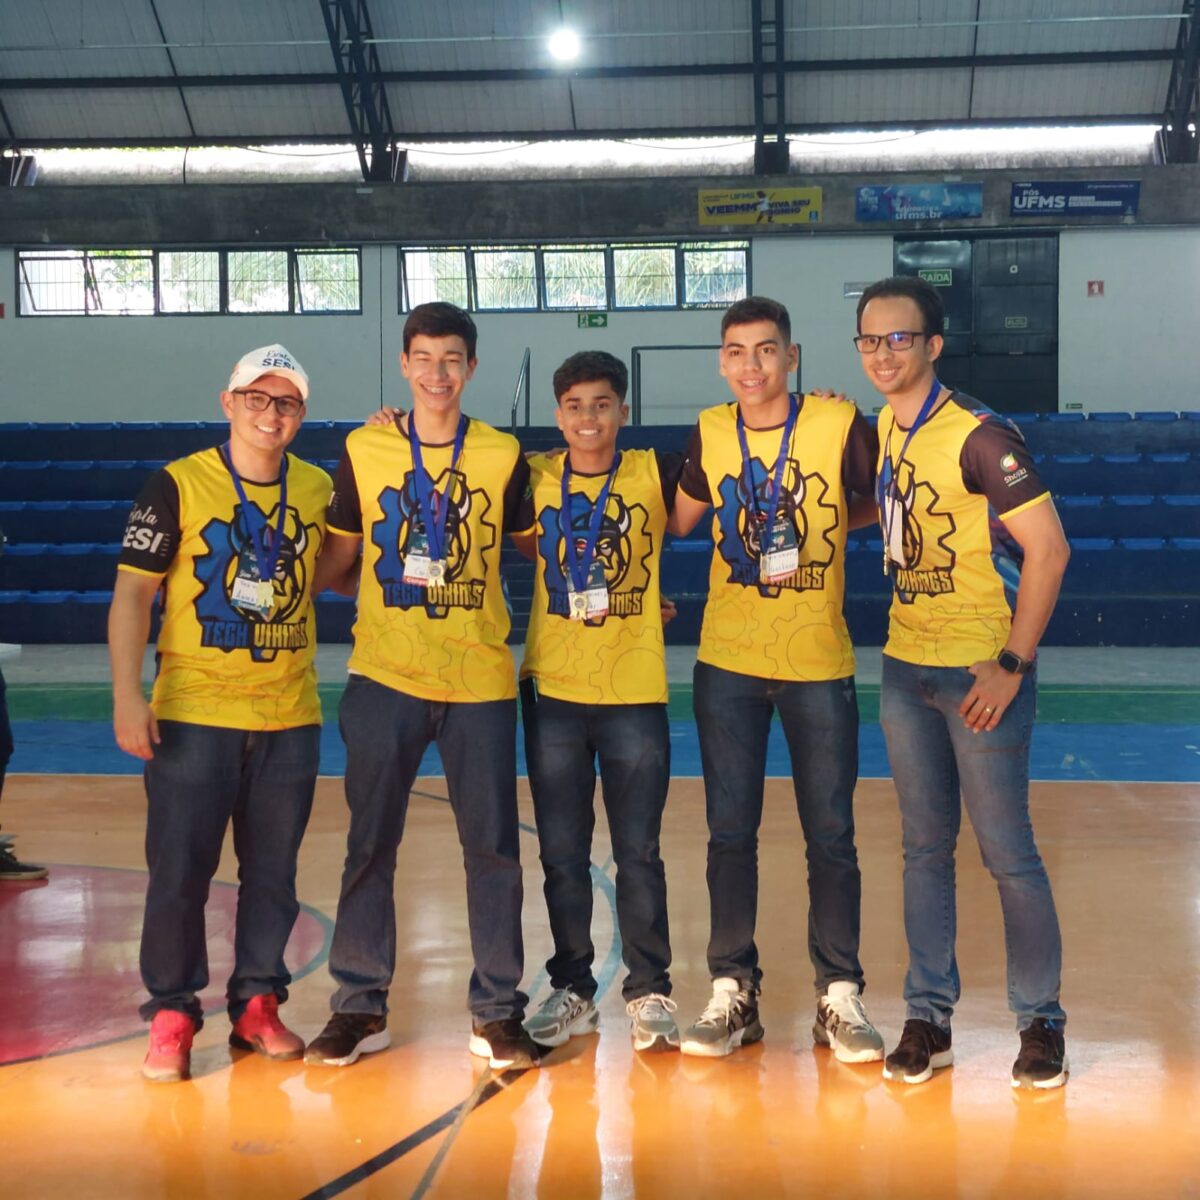 Escola Sesi fatura ouro, prata e bronze na etapa regional da Olimpíada Brasileira de Robótica 2023